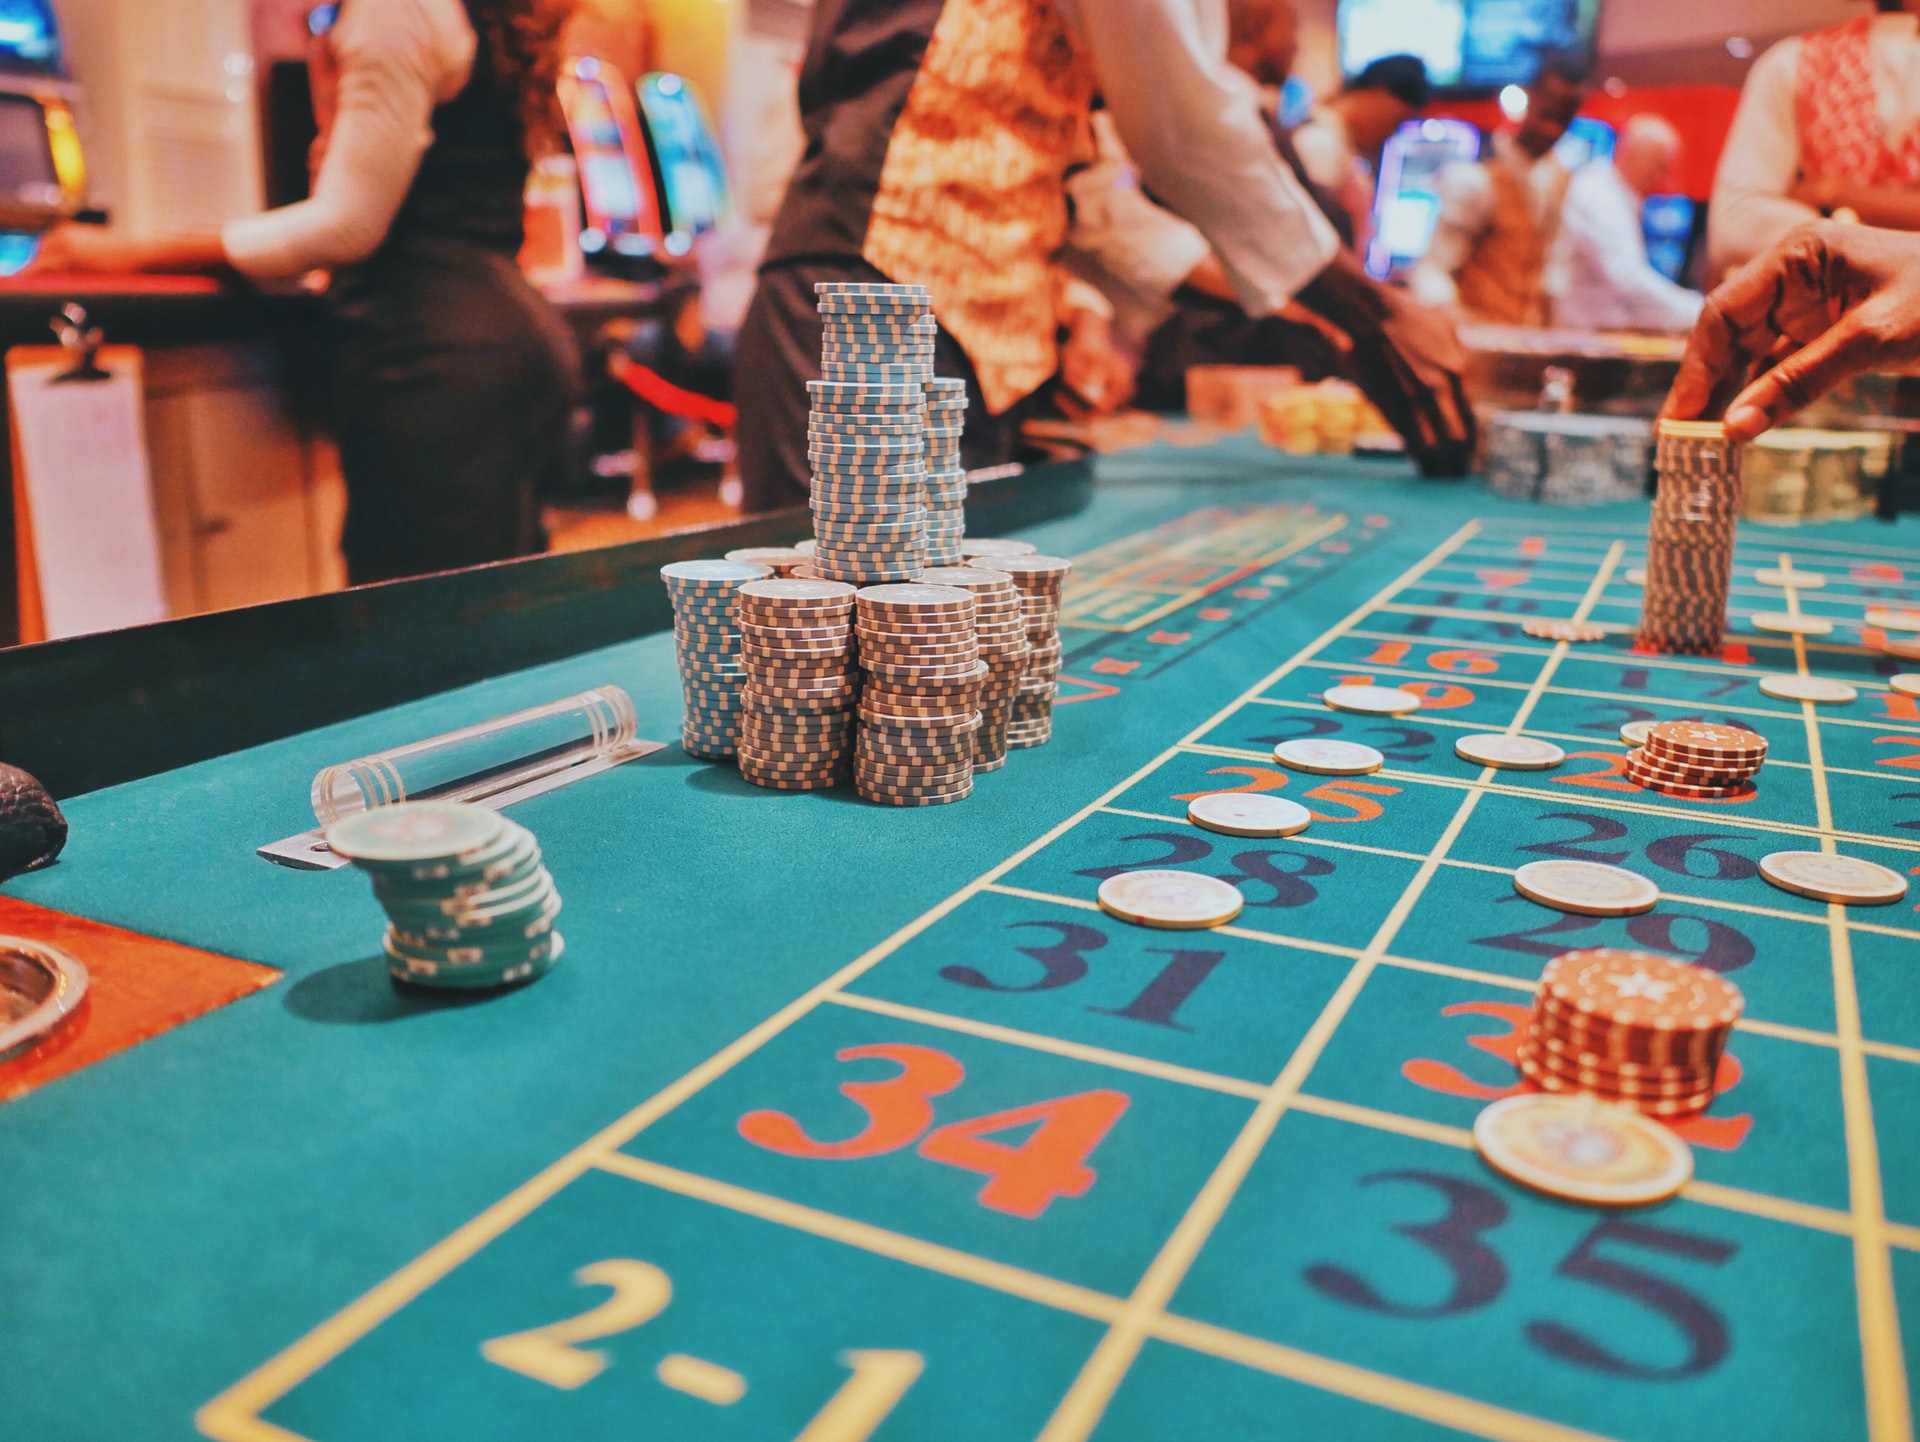 Casinoguide for nybegyndere – Sådan kommer du godt i gang